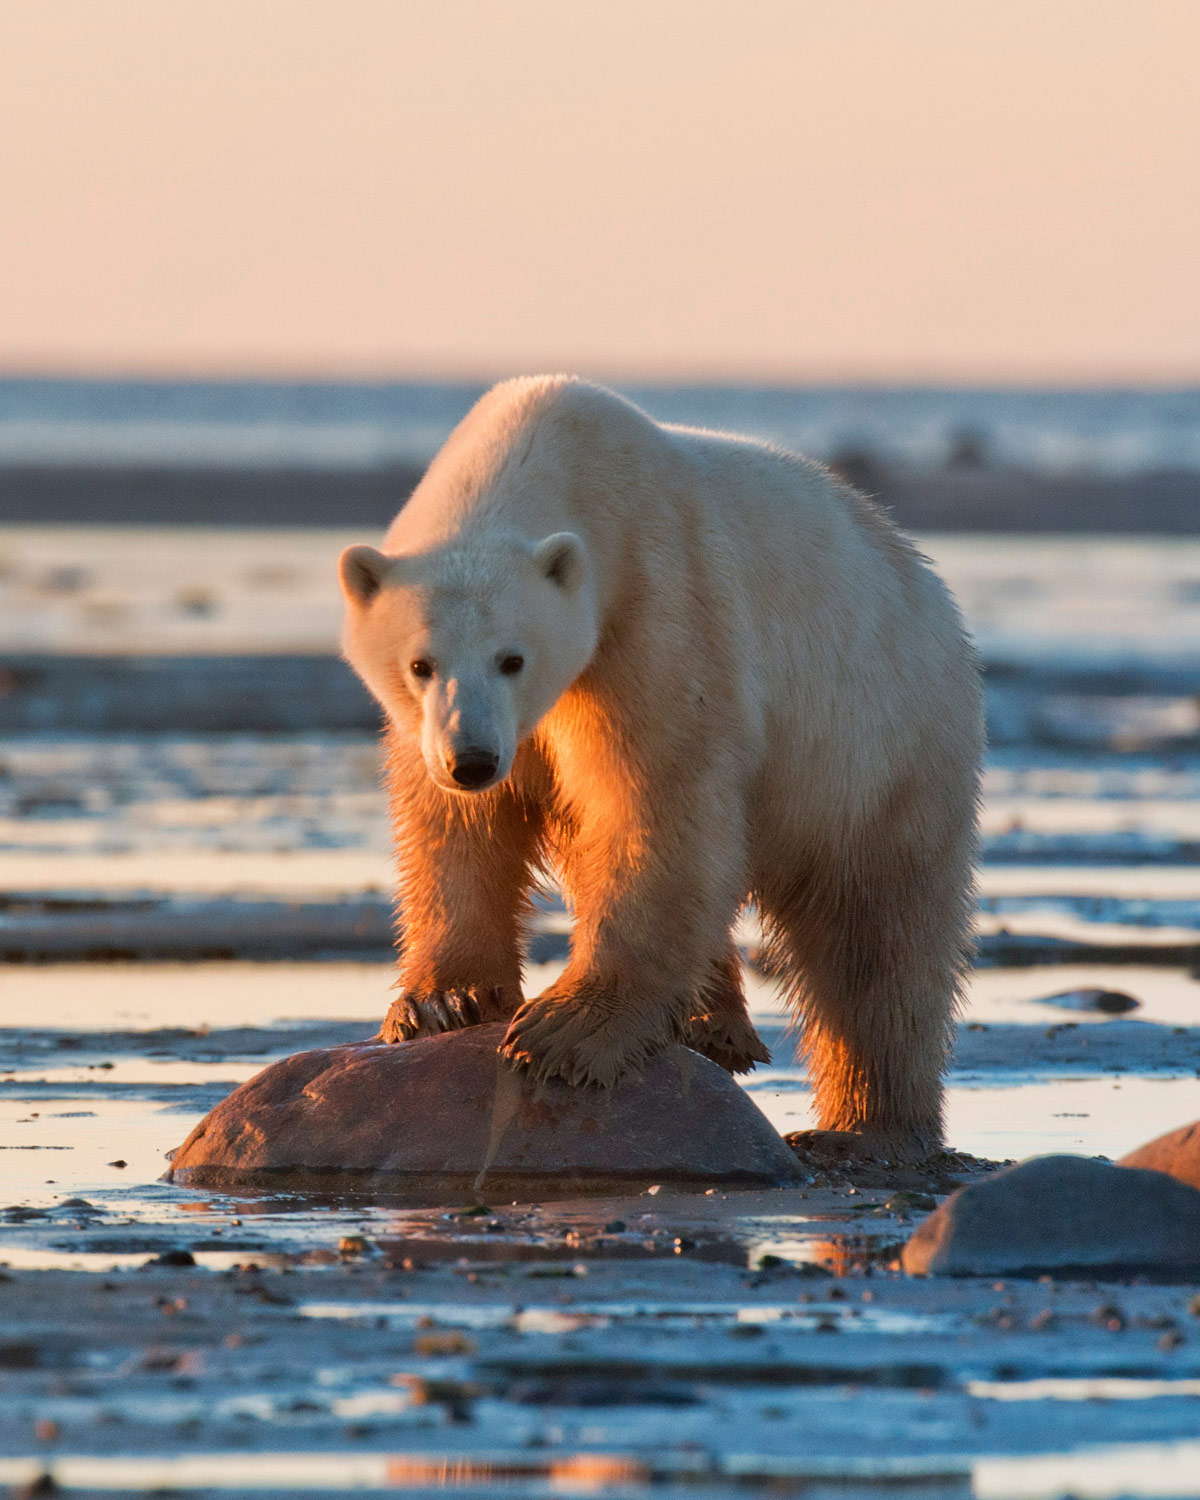 A polar bear stands on an empty beach